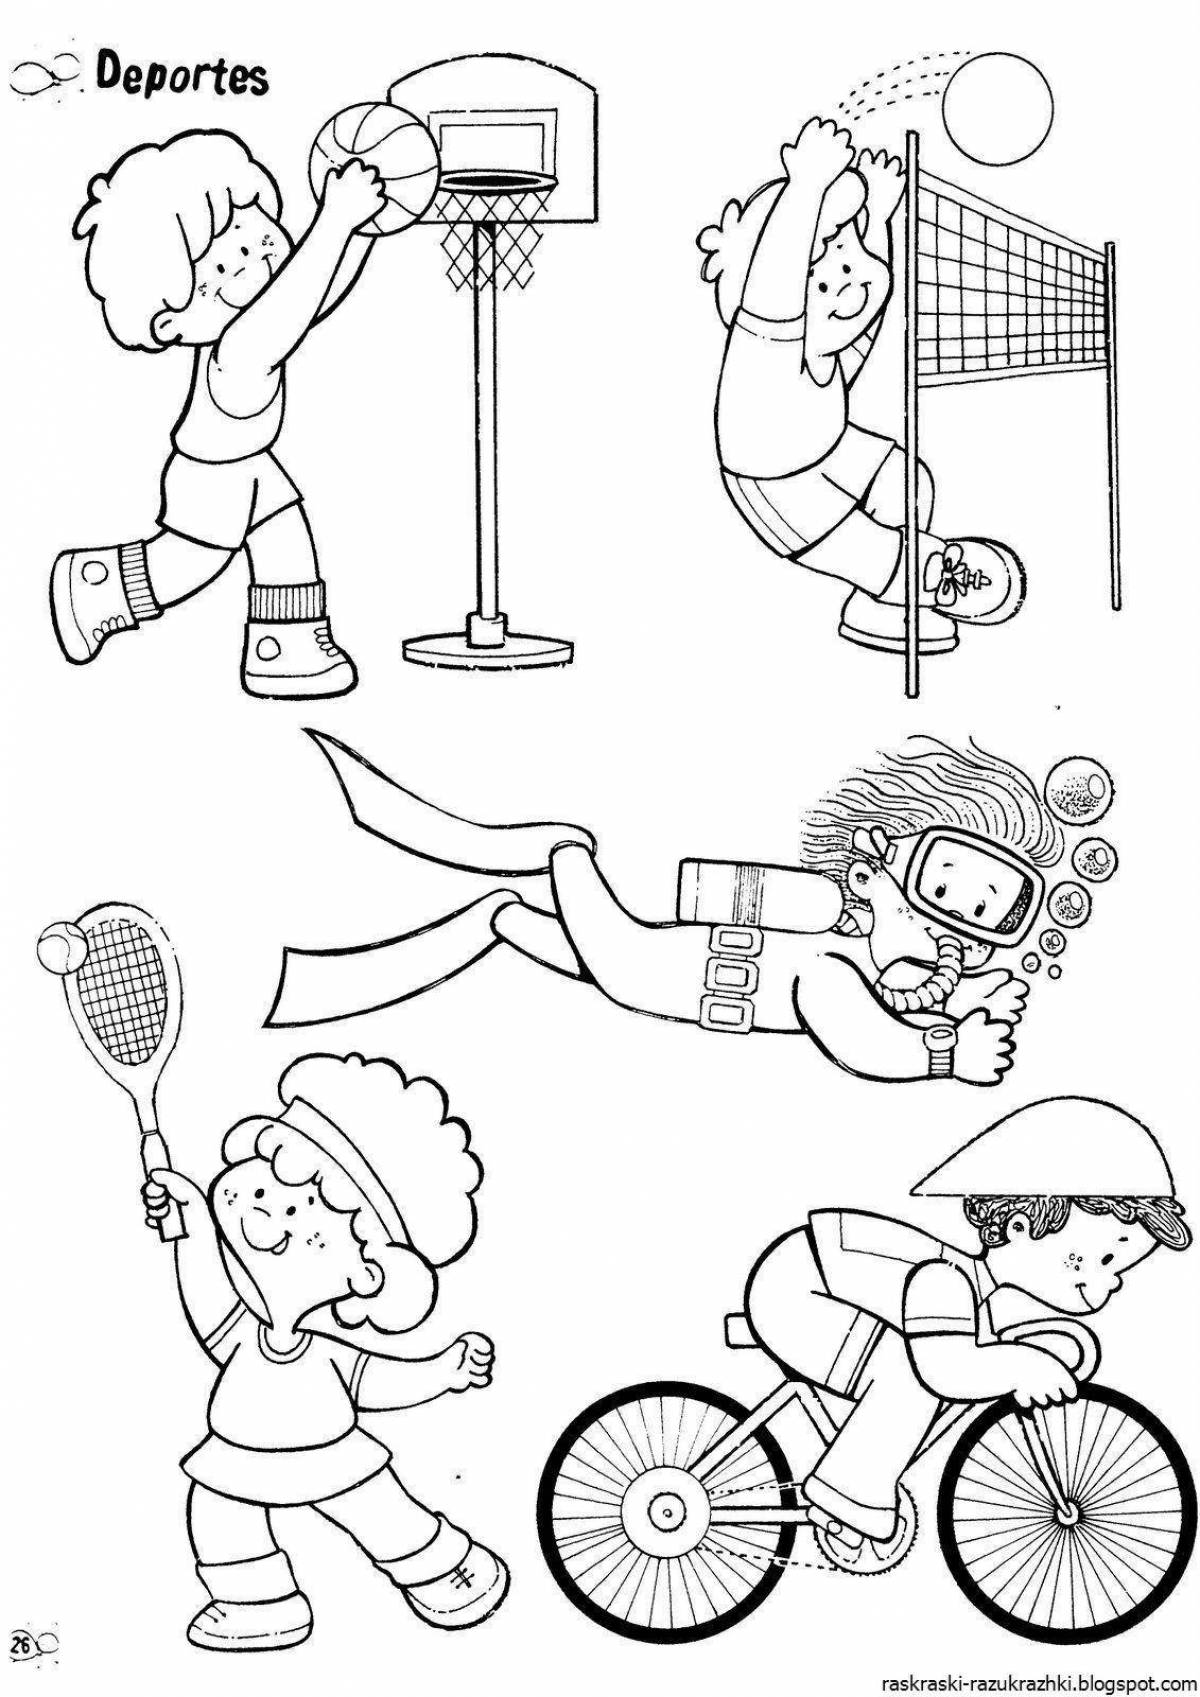 Картинки раскраски занятия спортом (52 фото) » Юмор, позитив и много смешных картинок